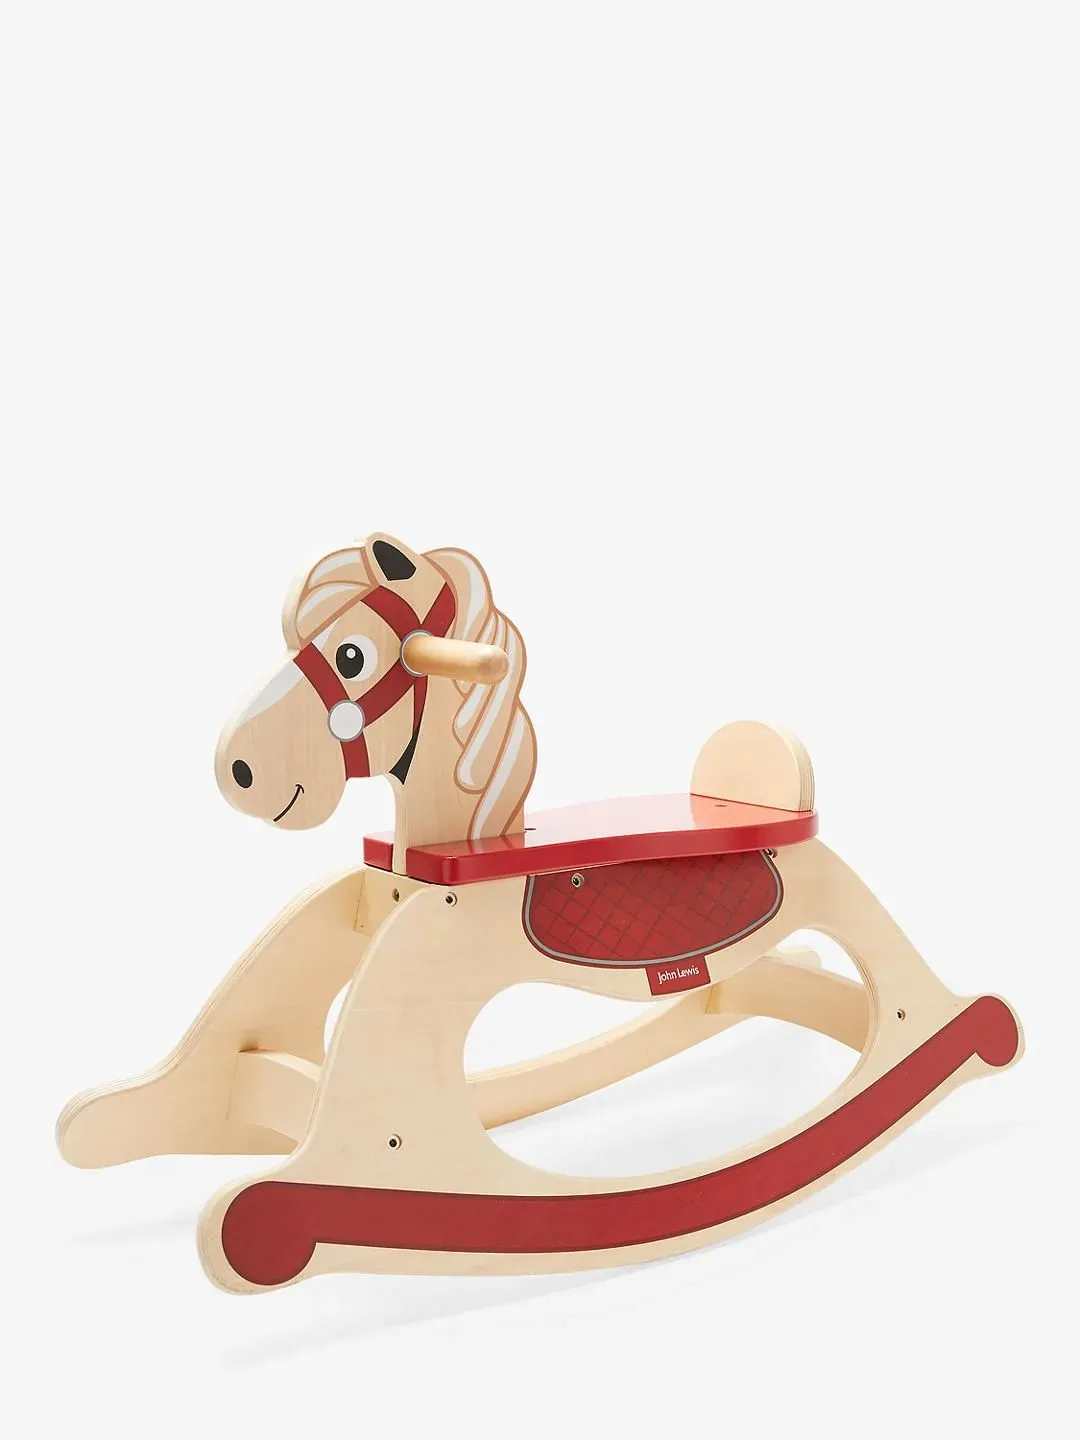 John Lewis & Partners Wooden Carousel Rocking Horse.